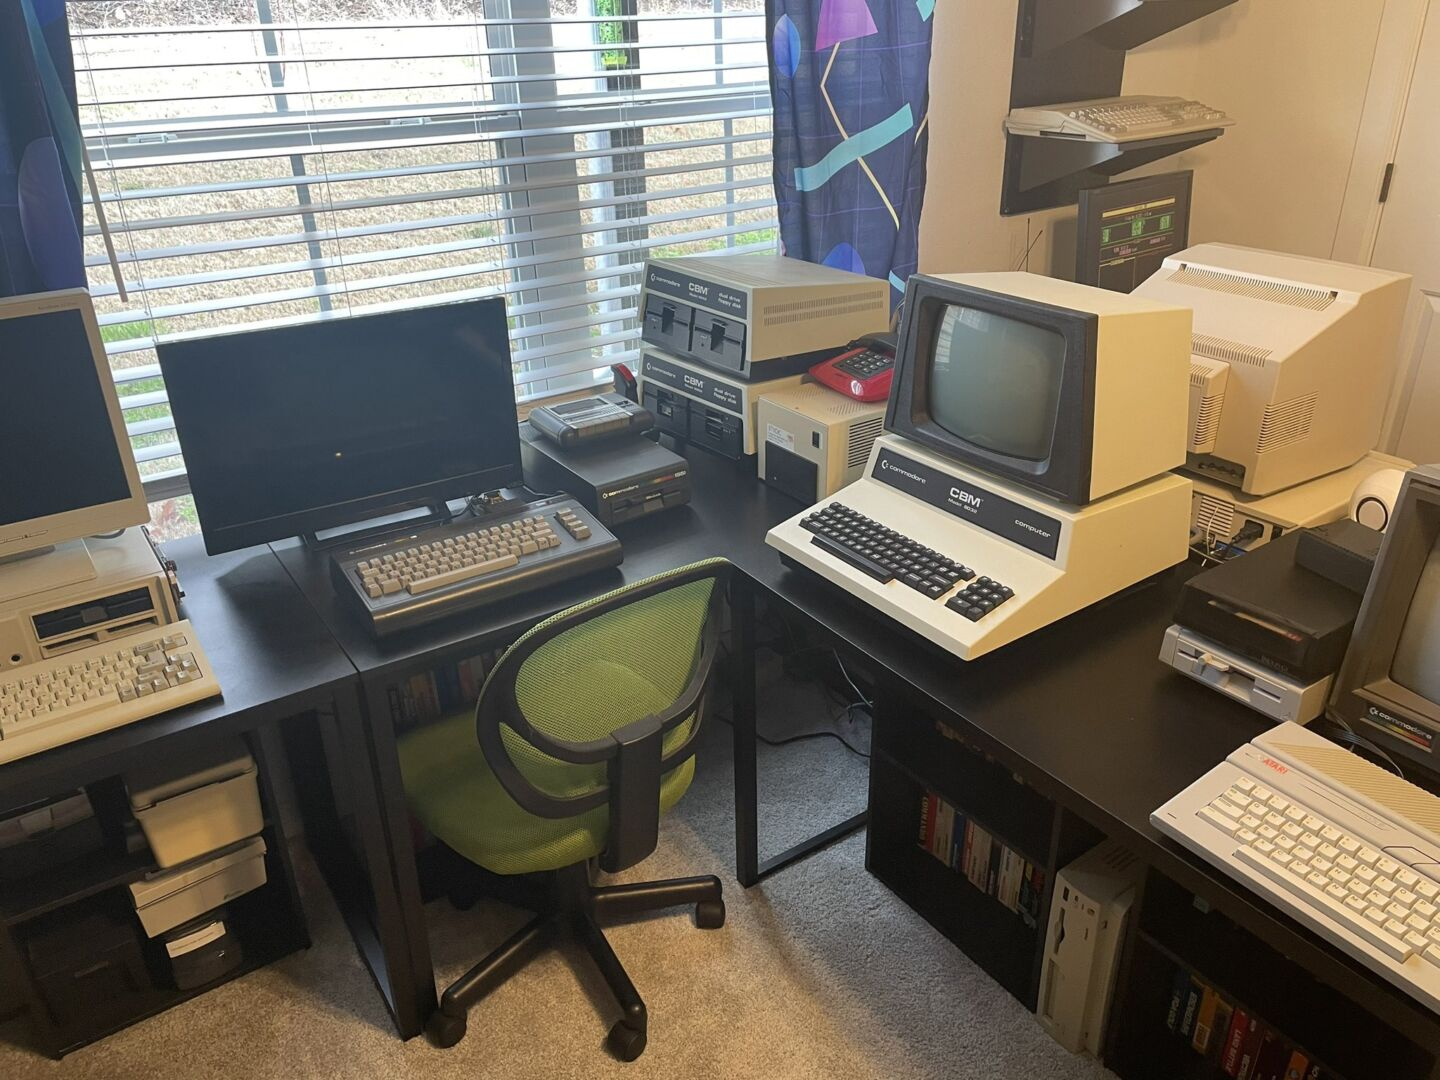 С этого ракурса мы видим Commodore CBM 8032, Commodore 16 и фрагмент IBM PCjr слева. Обратите внимание на винтажный красный телефон в стиле 1980-х годов.